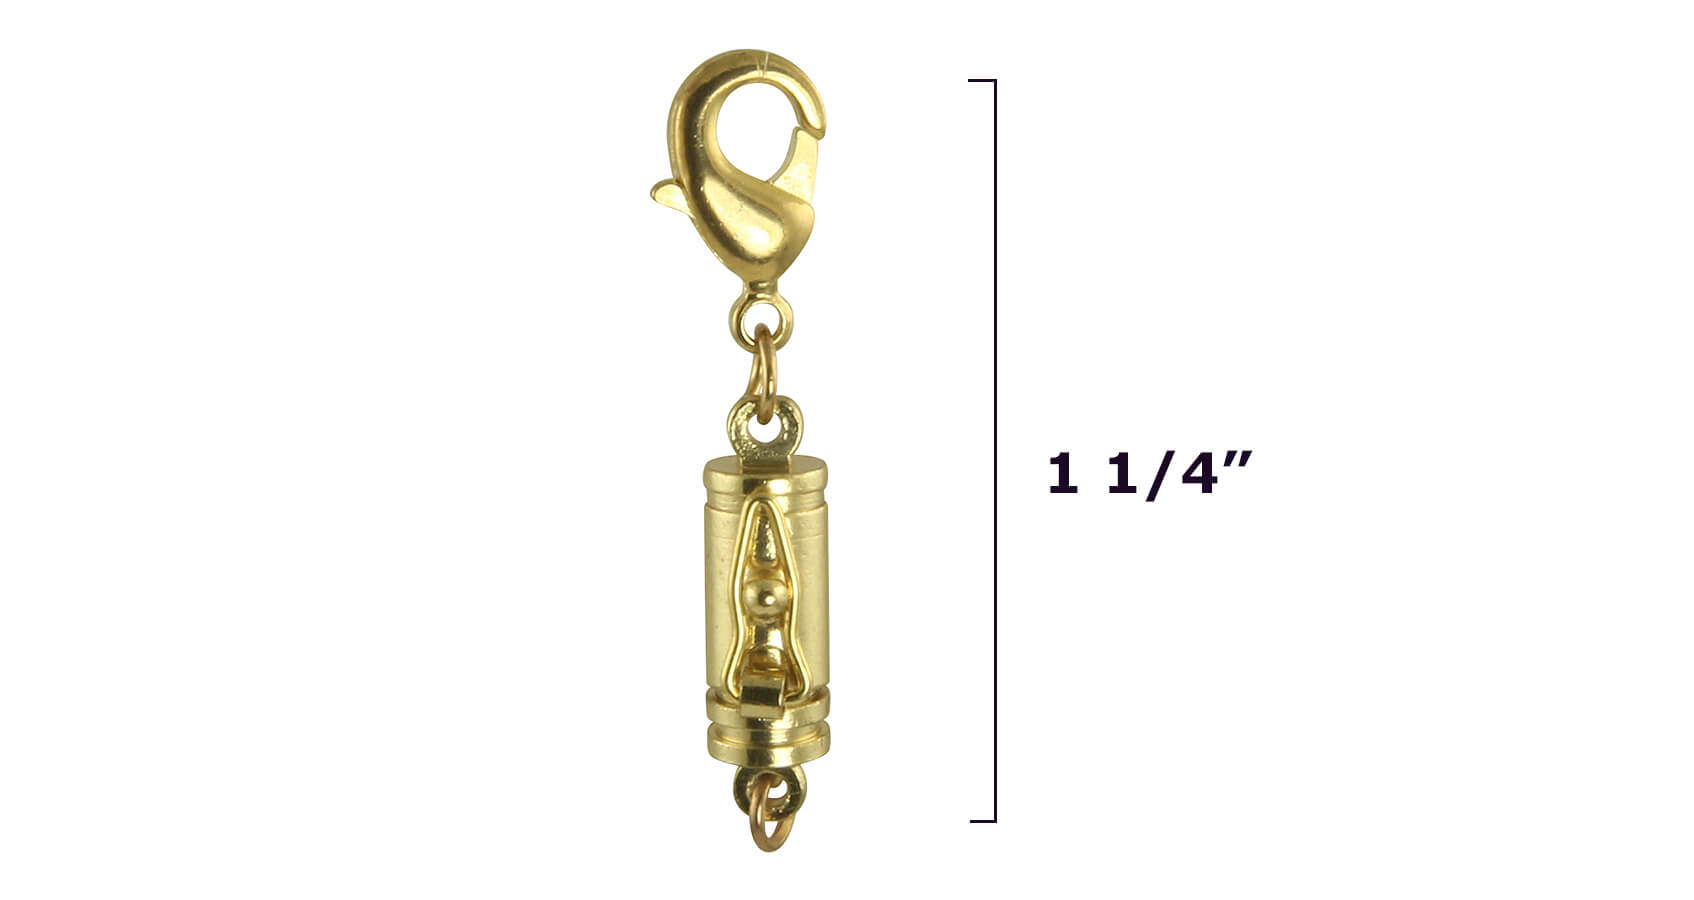 Necklace or Bracelet Extender 1.25 Inch